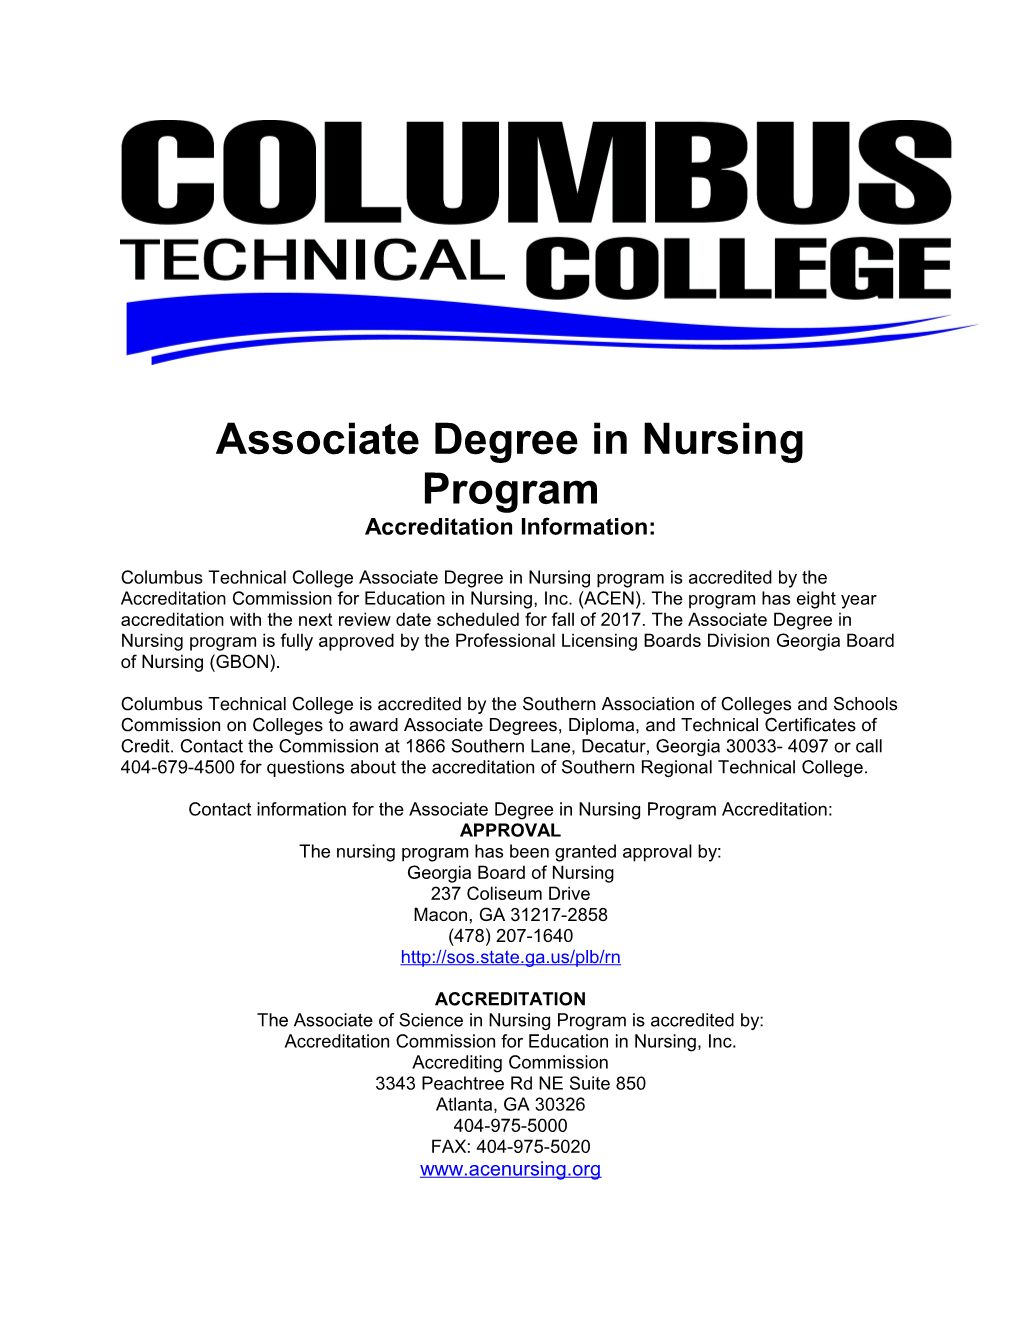 Associate Degree in Nursing Program